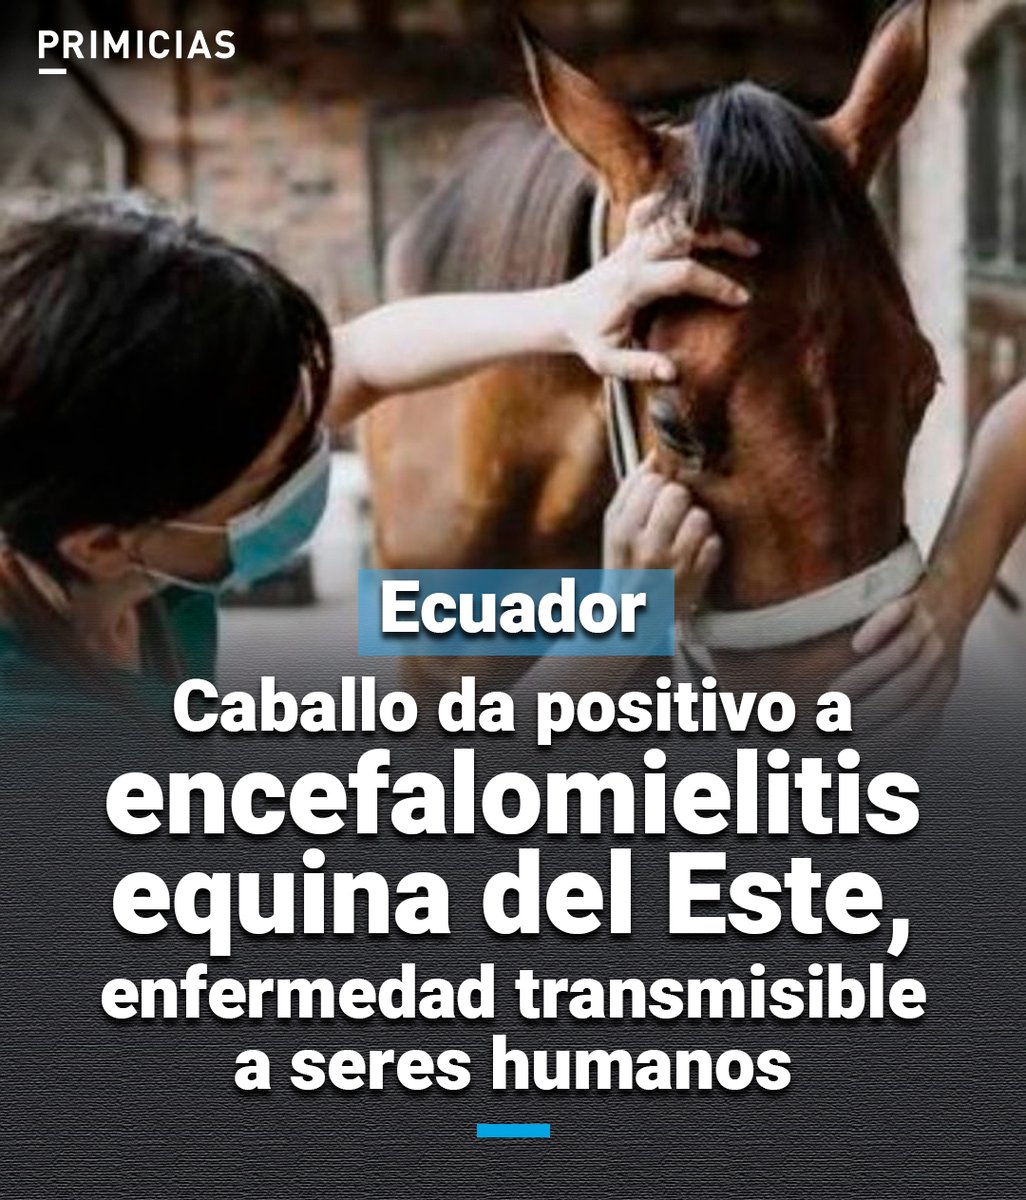 Las encefalomielitis equina del Este es una infección viral, que pueden causar encefalitis grave en caballos y seres humanos. Un caso se detectó en Guayas. prim.ec/OhEj50RKYu7